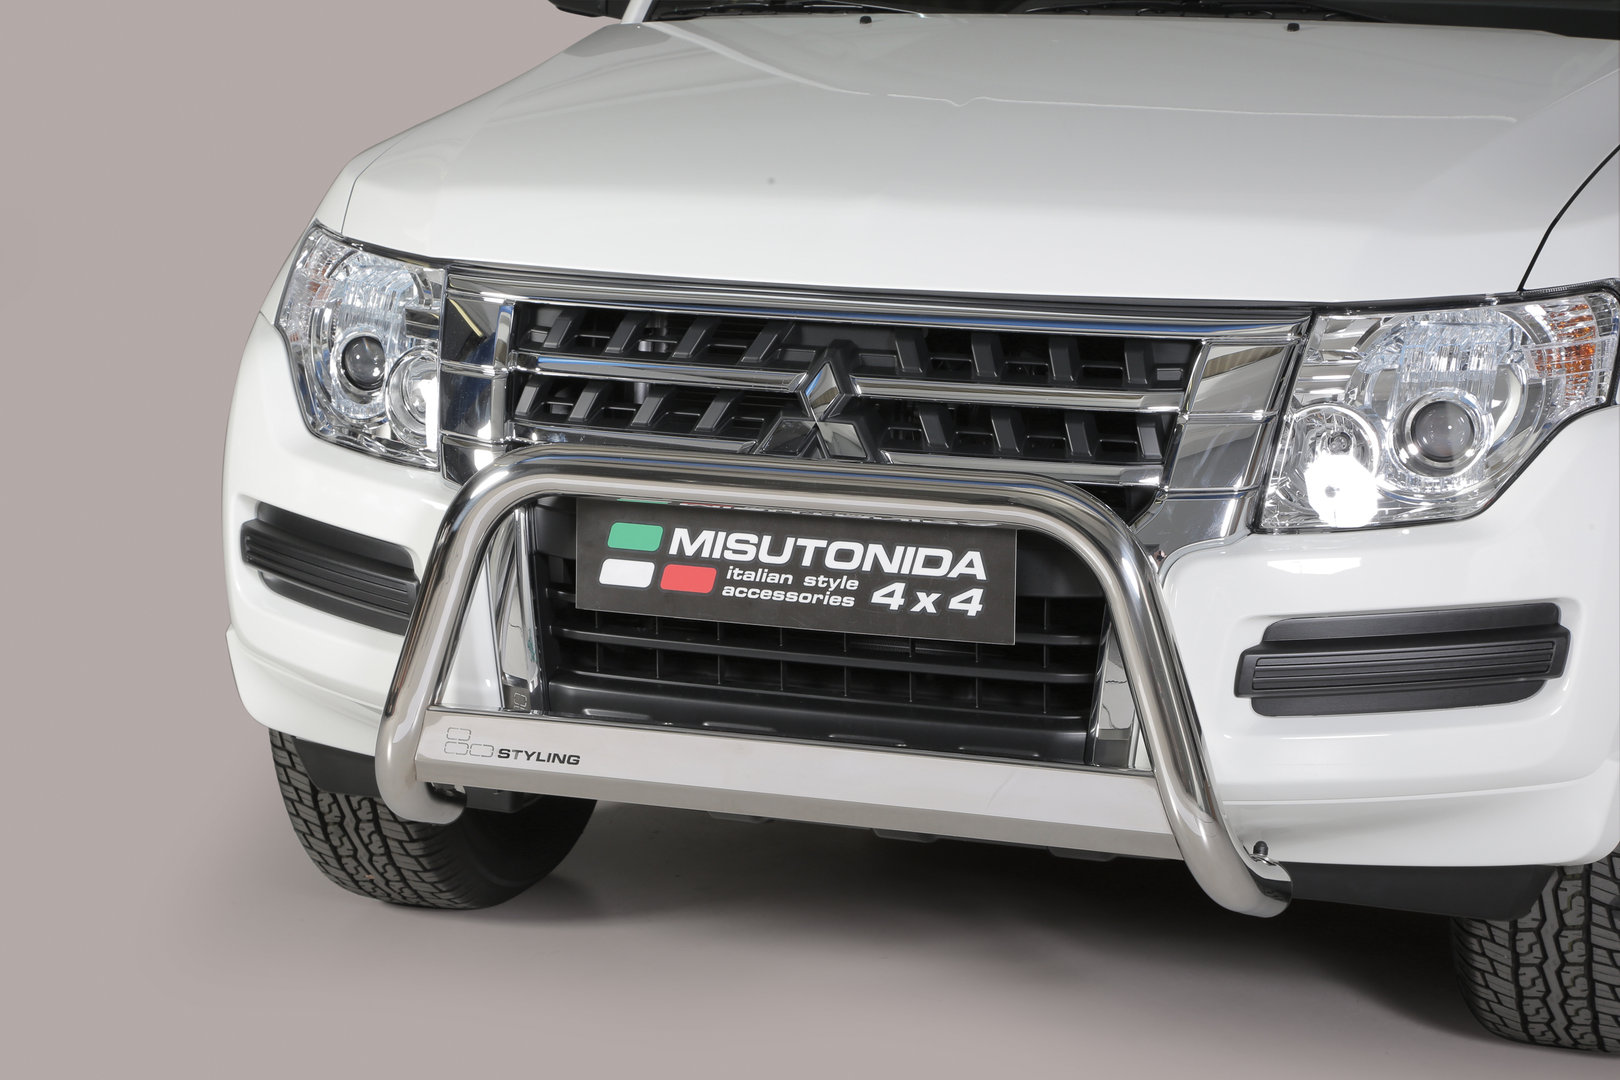 Mitsubishi Pajero EU - Valorauta 2015-> (Misutonida)